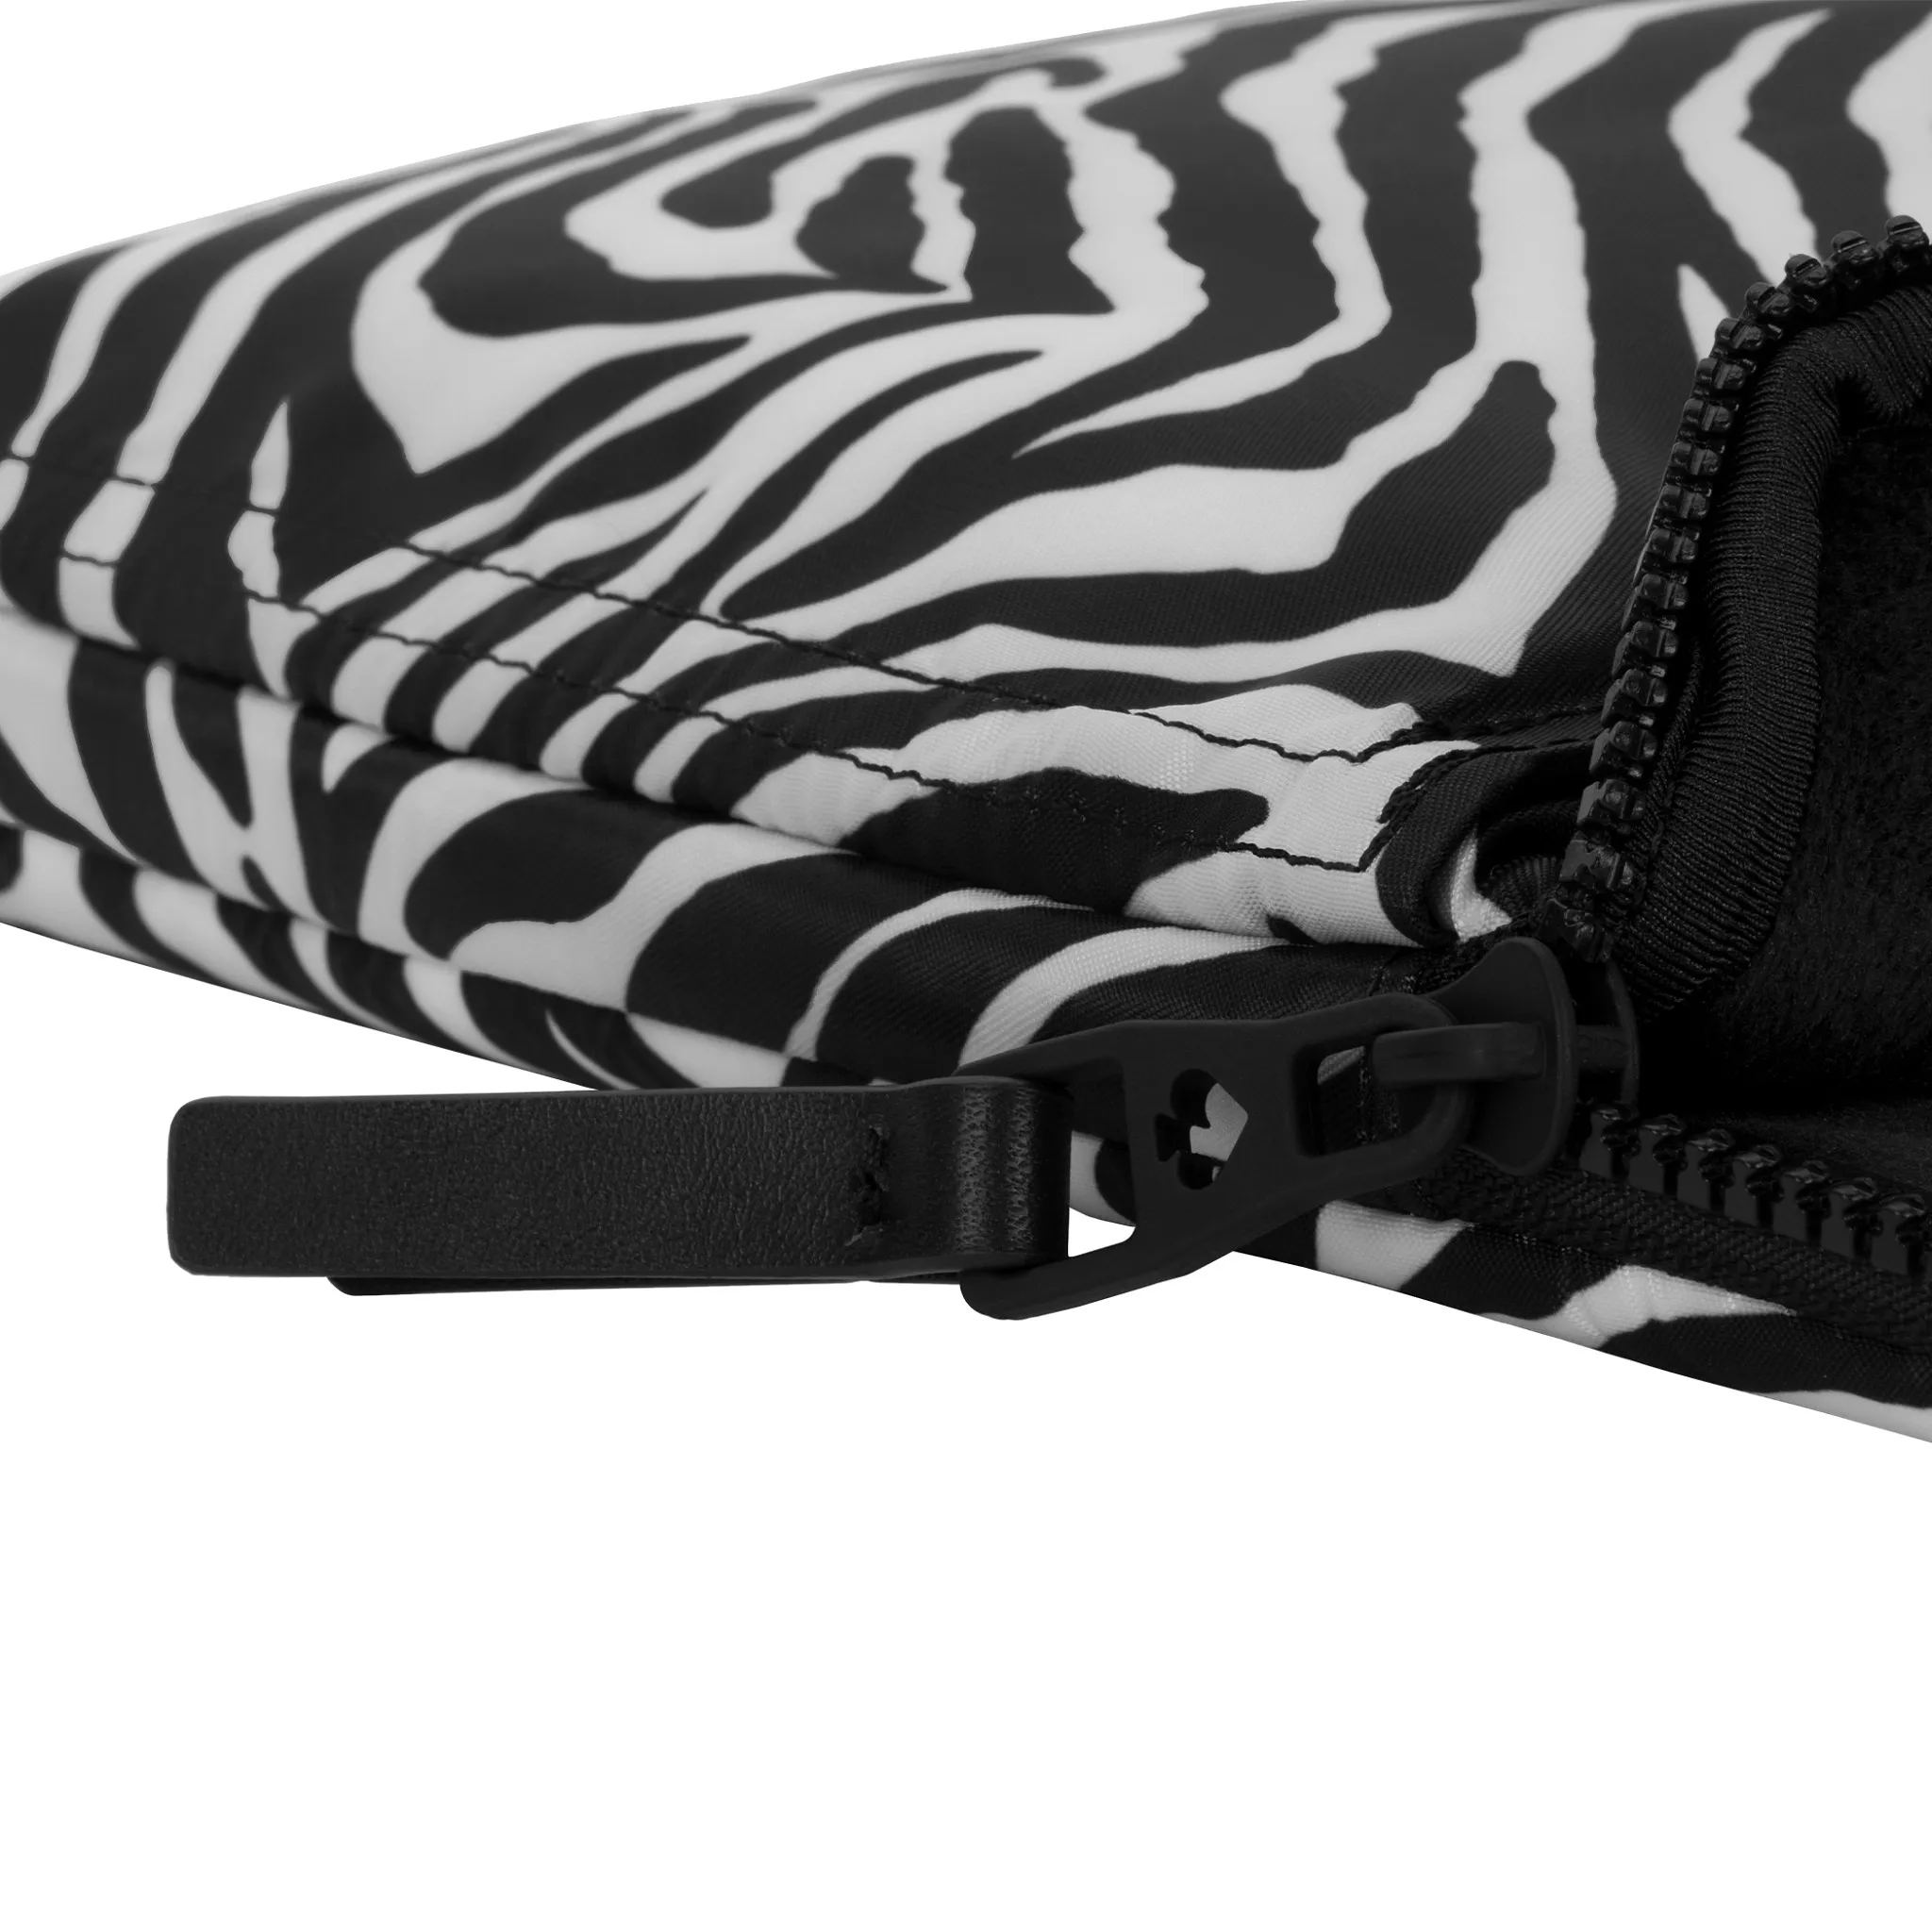 ซองใส่แล็ปท็อป Kate Spade New York รุ่น Puffer Sleeve - 14 inch Laptop - ลาย Zebra